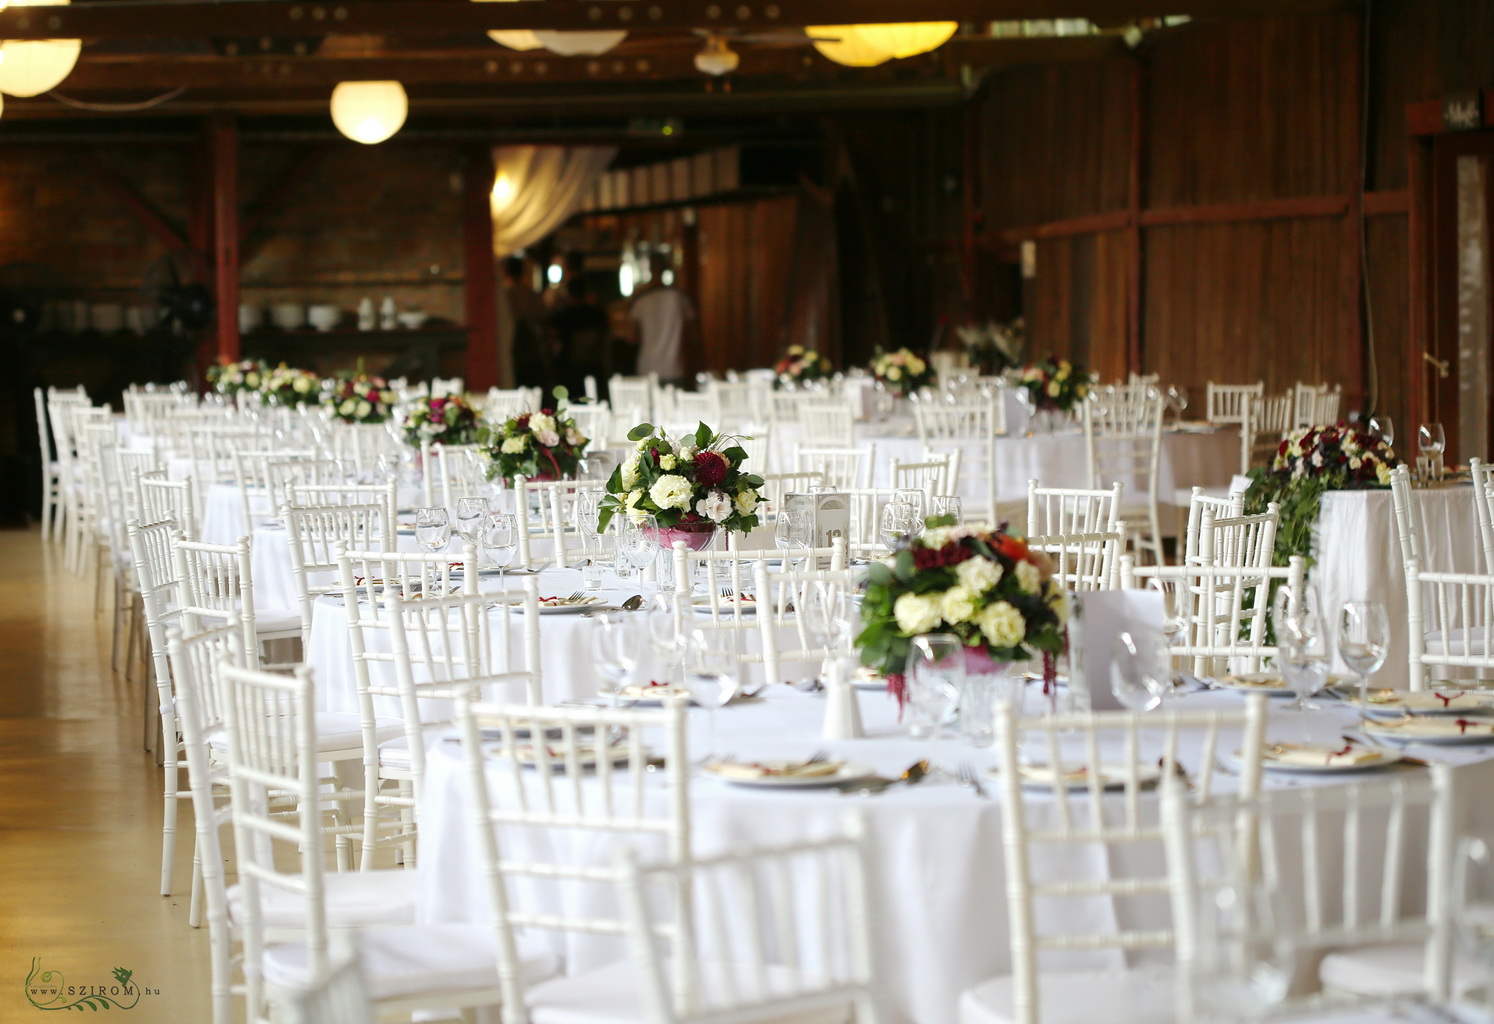 Esküvői asztaldísz kehelyvázában, Csónakház Mulató Budapest (liziantusz, dália, gránátalma, krém, bordó)